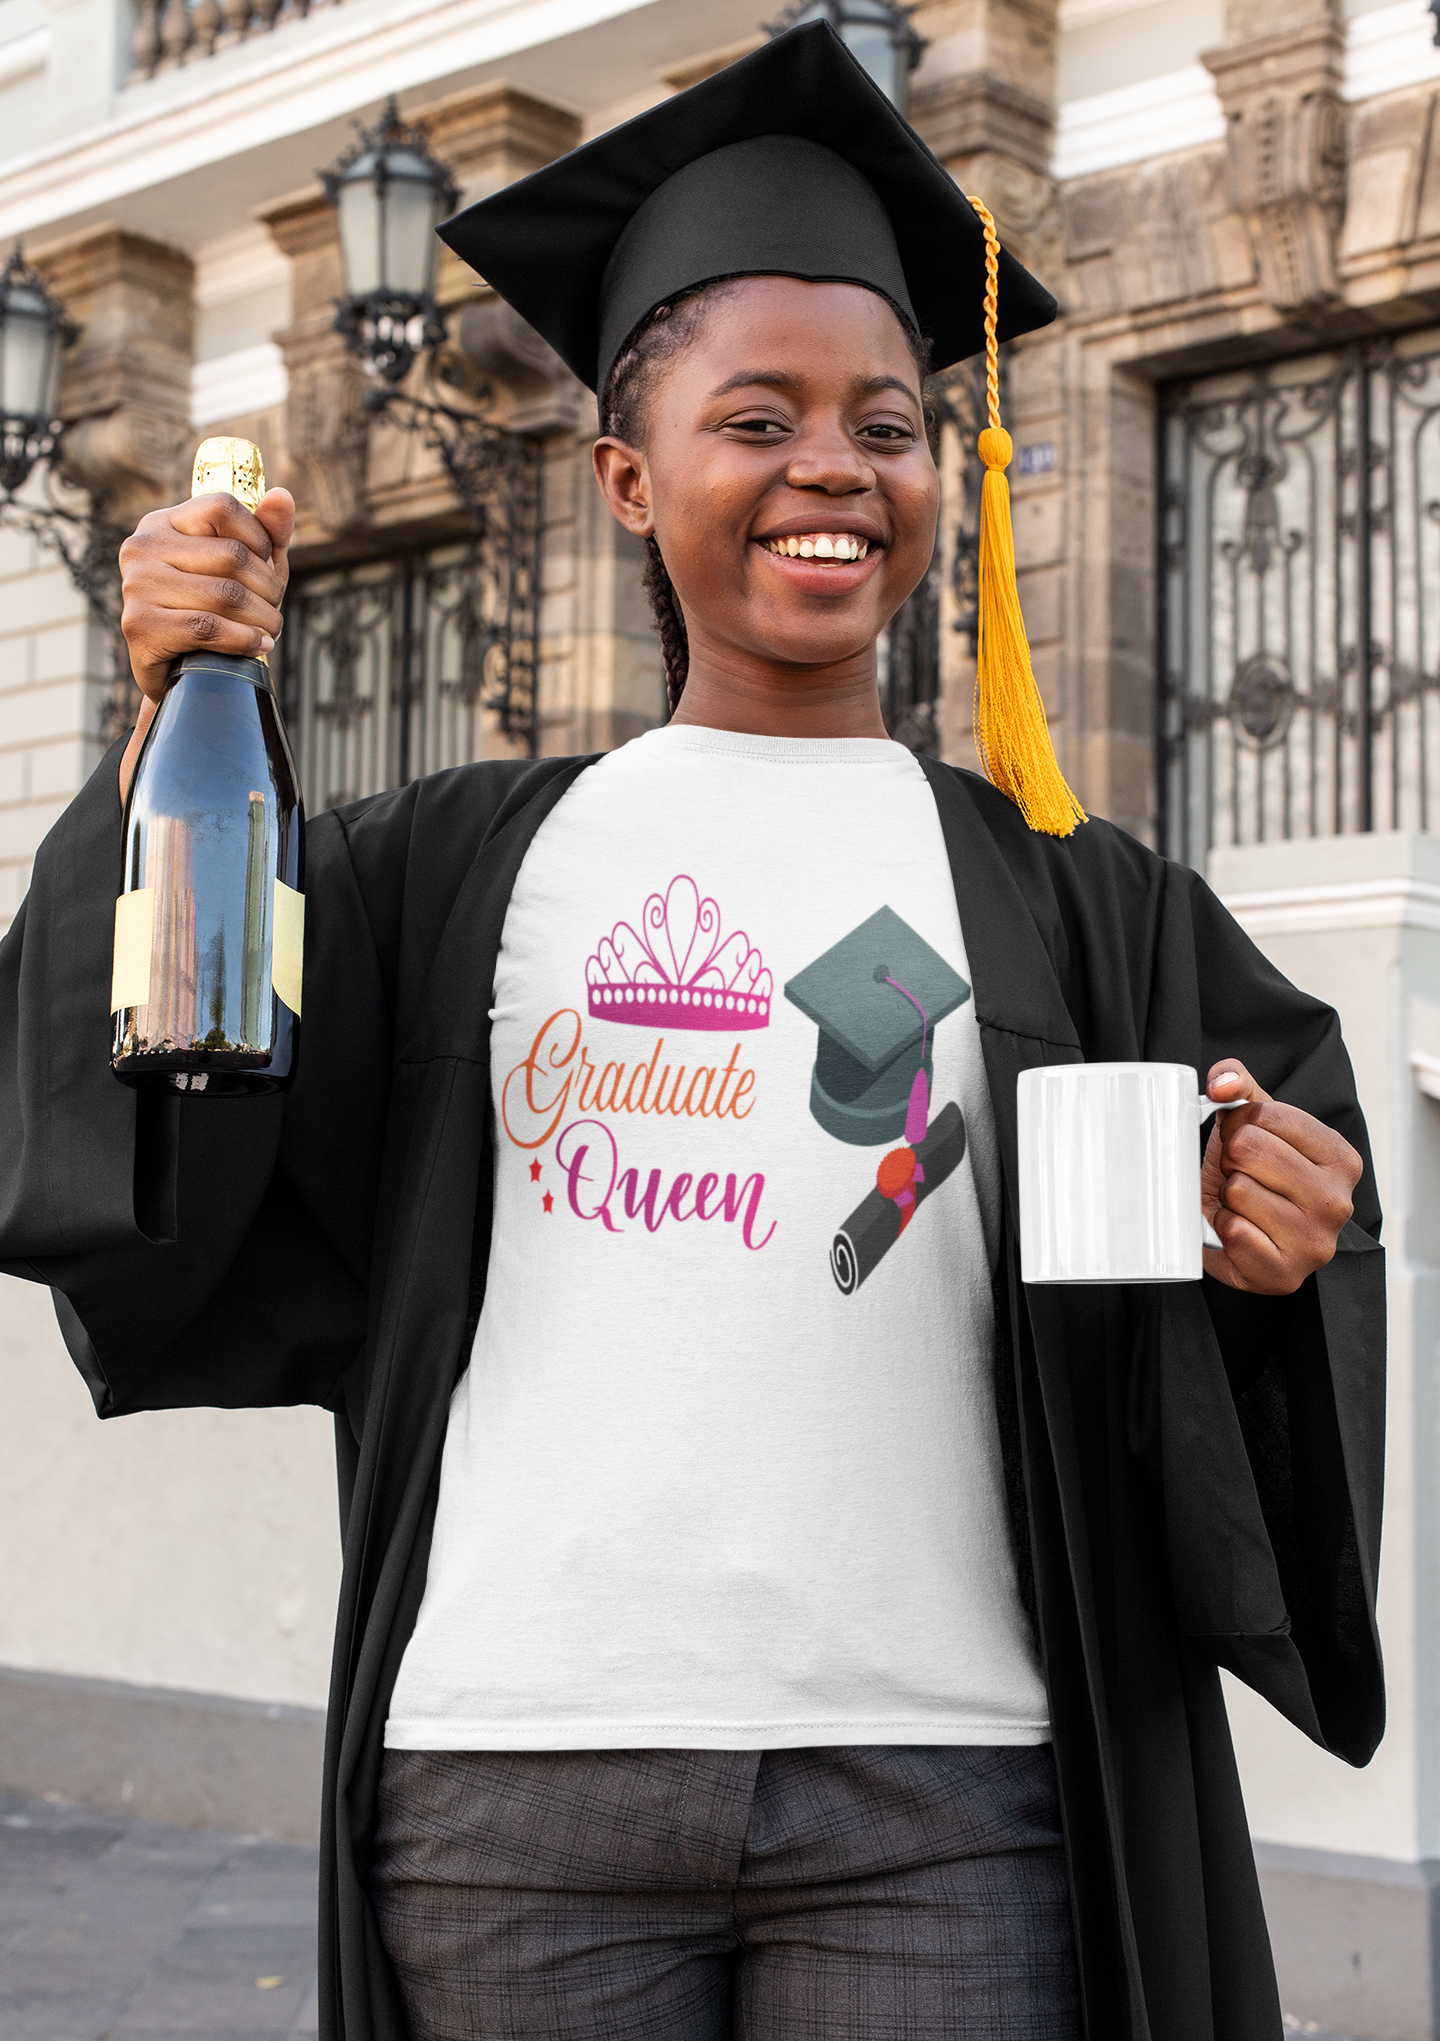 Graduate Queen - T-Shirt